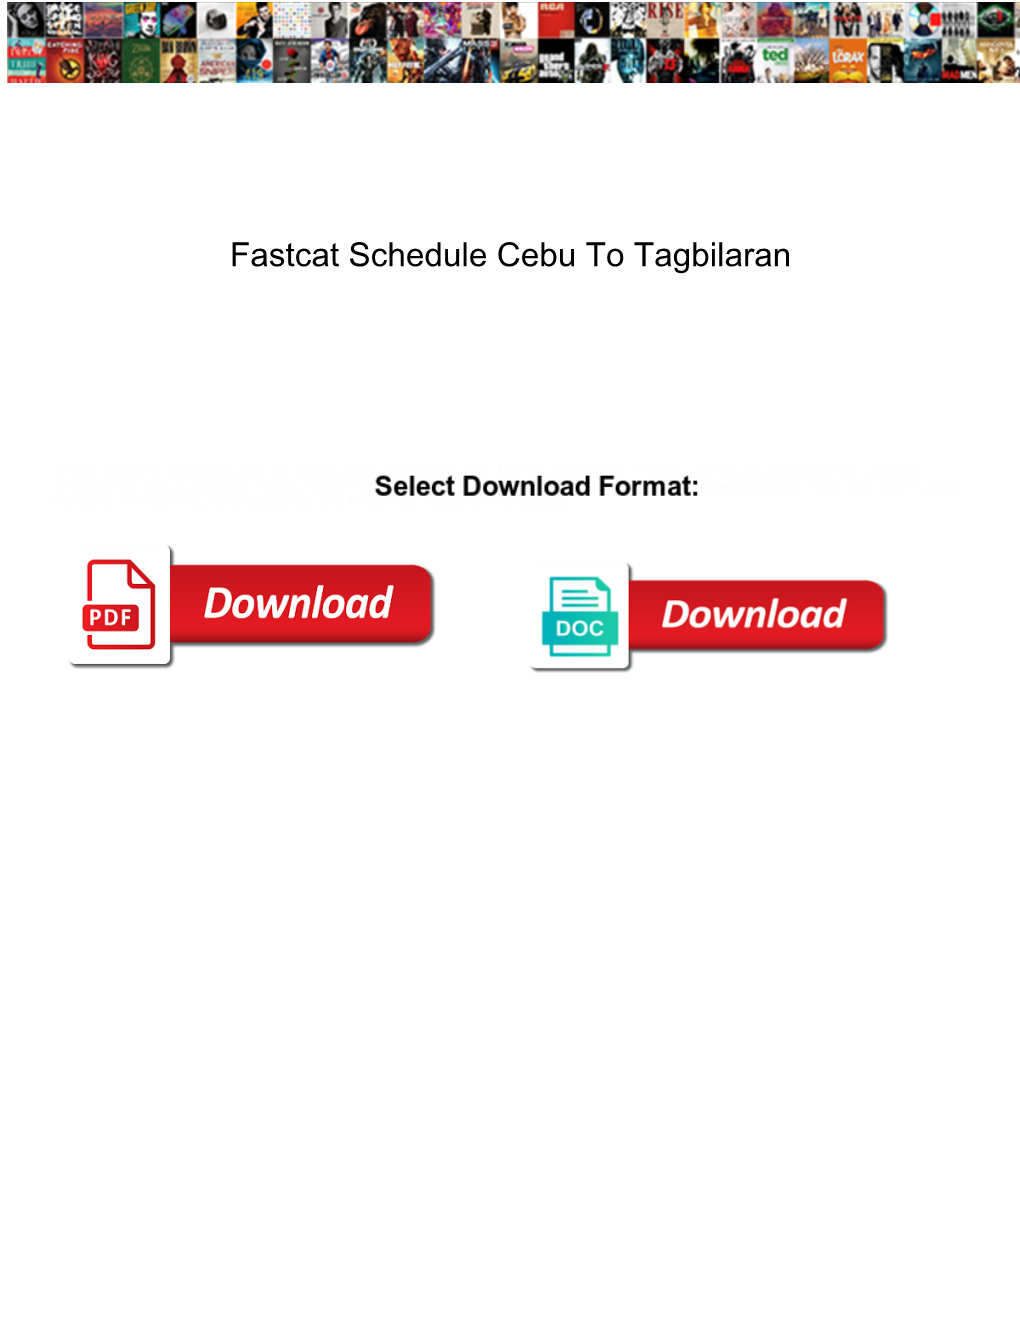 Fastcat Schedule Cebu to Tagbilaran